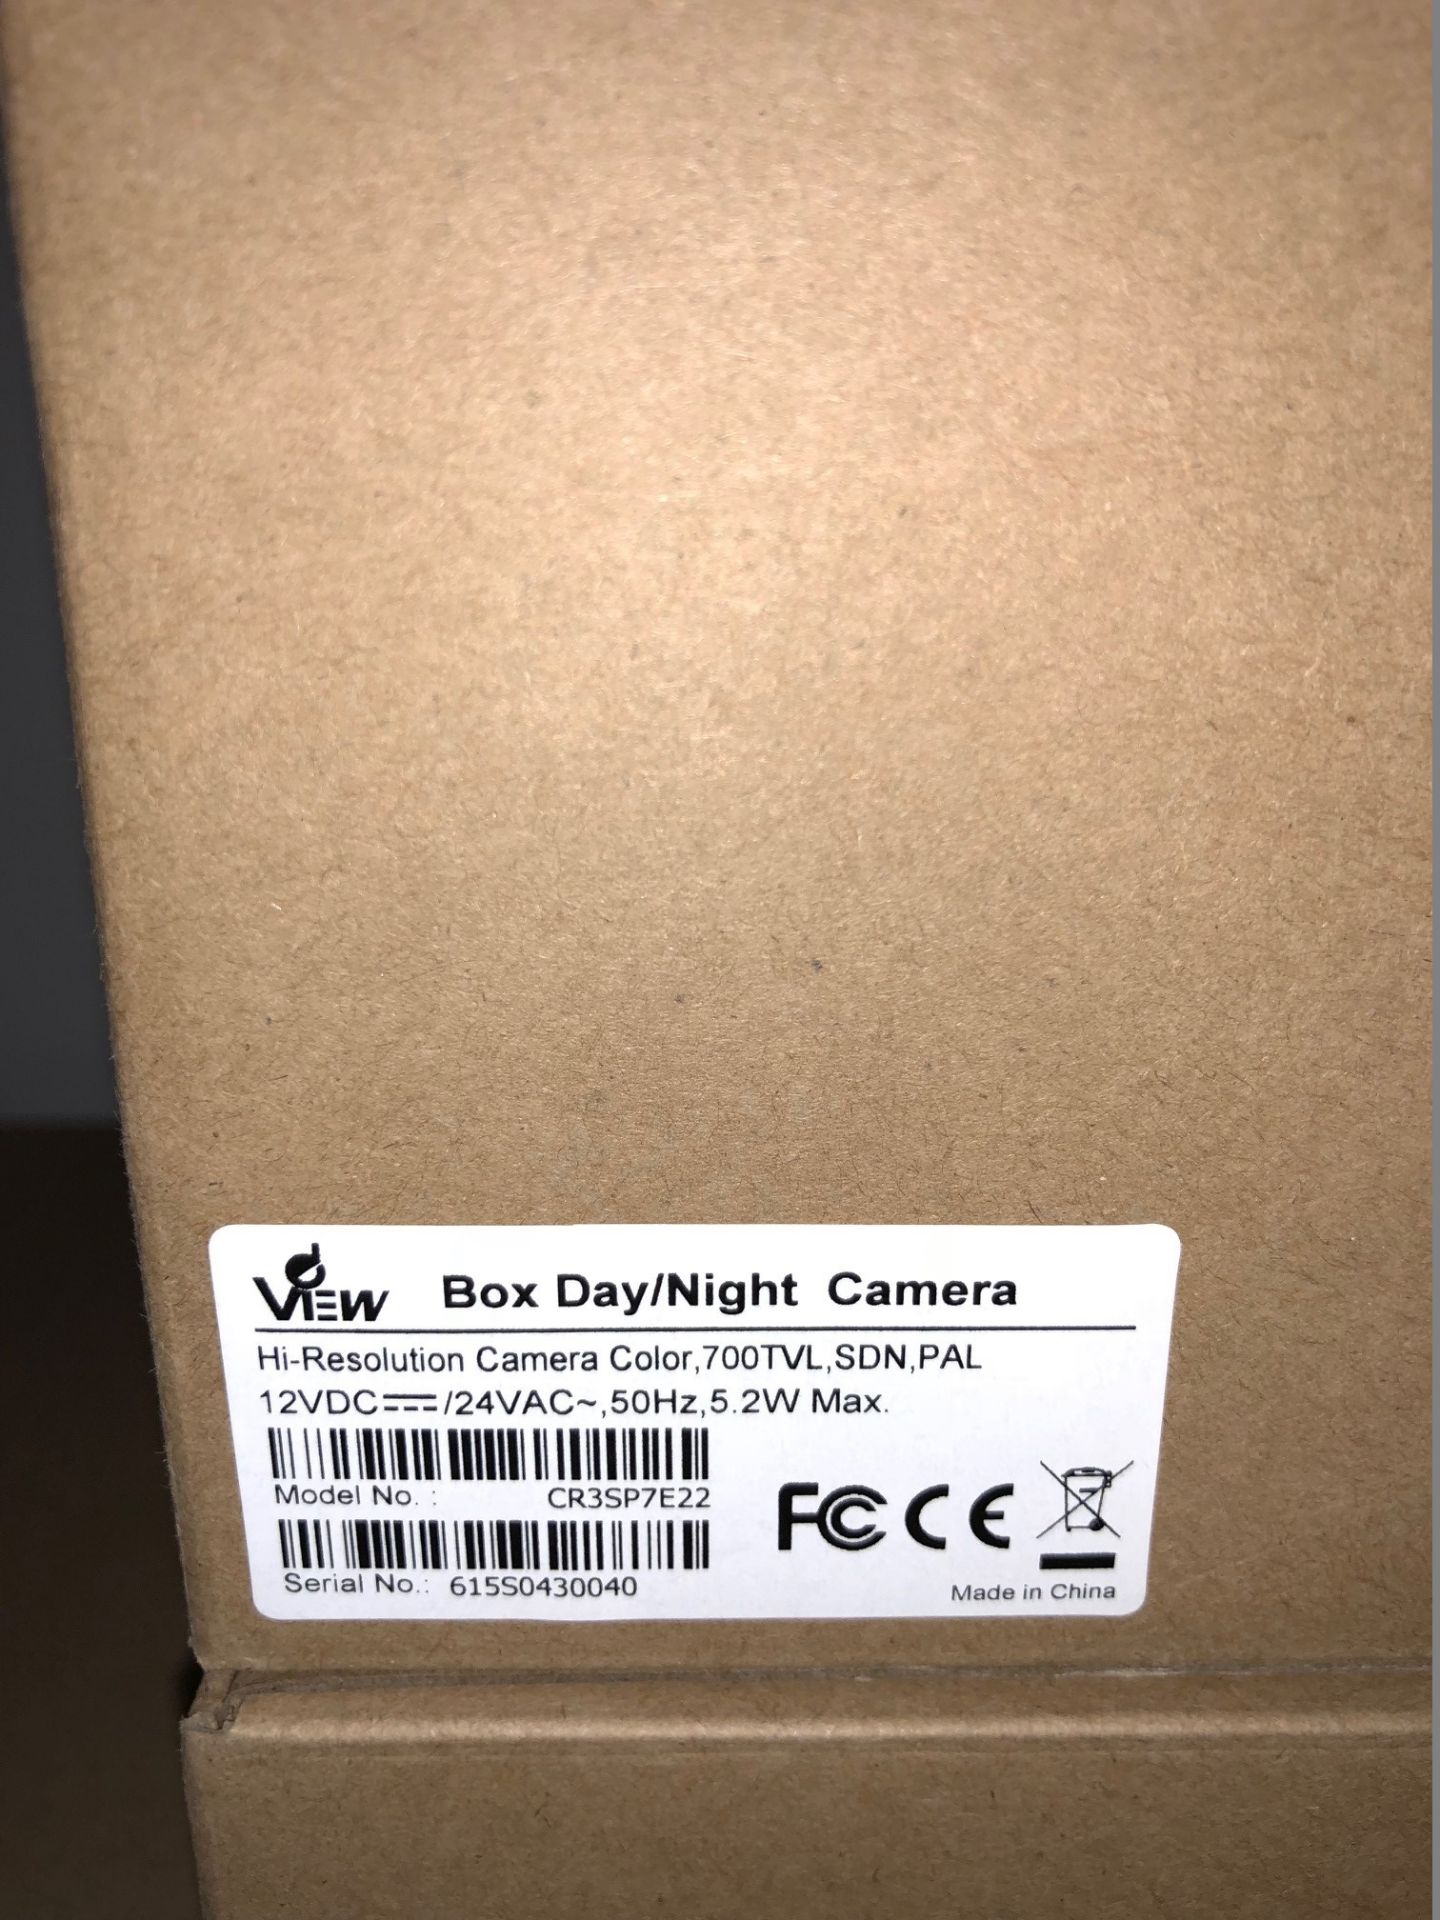 4 x dView Day/Night Cameras - Hi-Resolution Colour Camera, 700TVL, SDN, PAL - Model CR3SP7E22 (Brand - Image 2 of 3